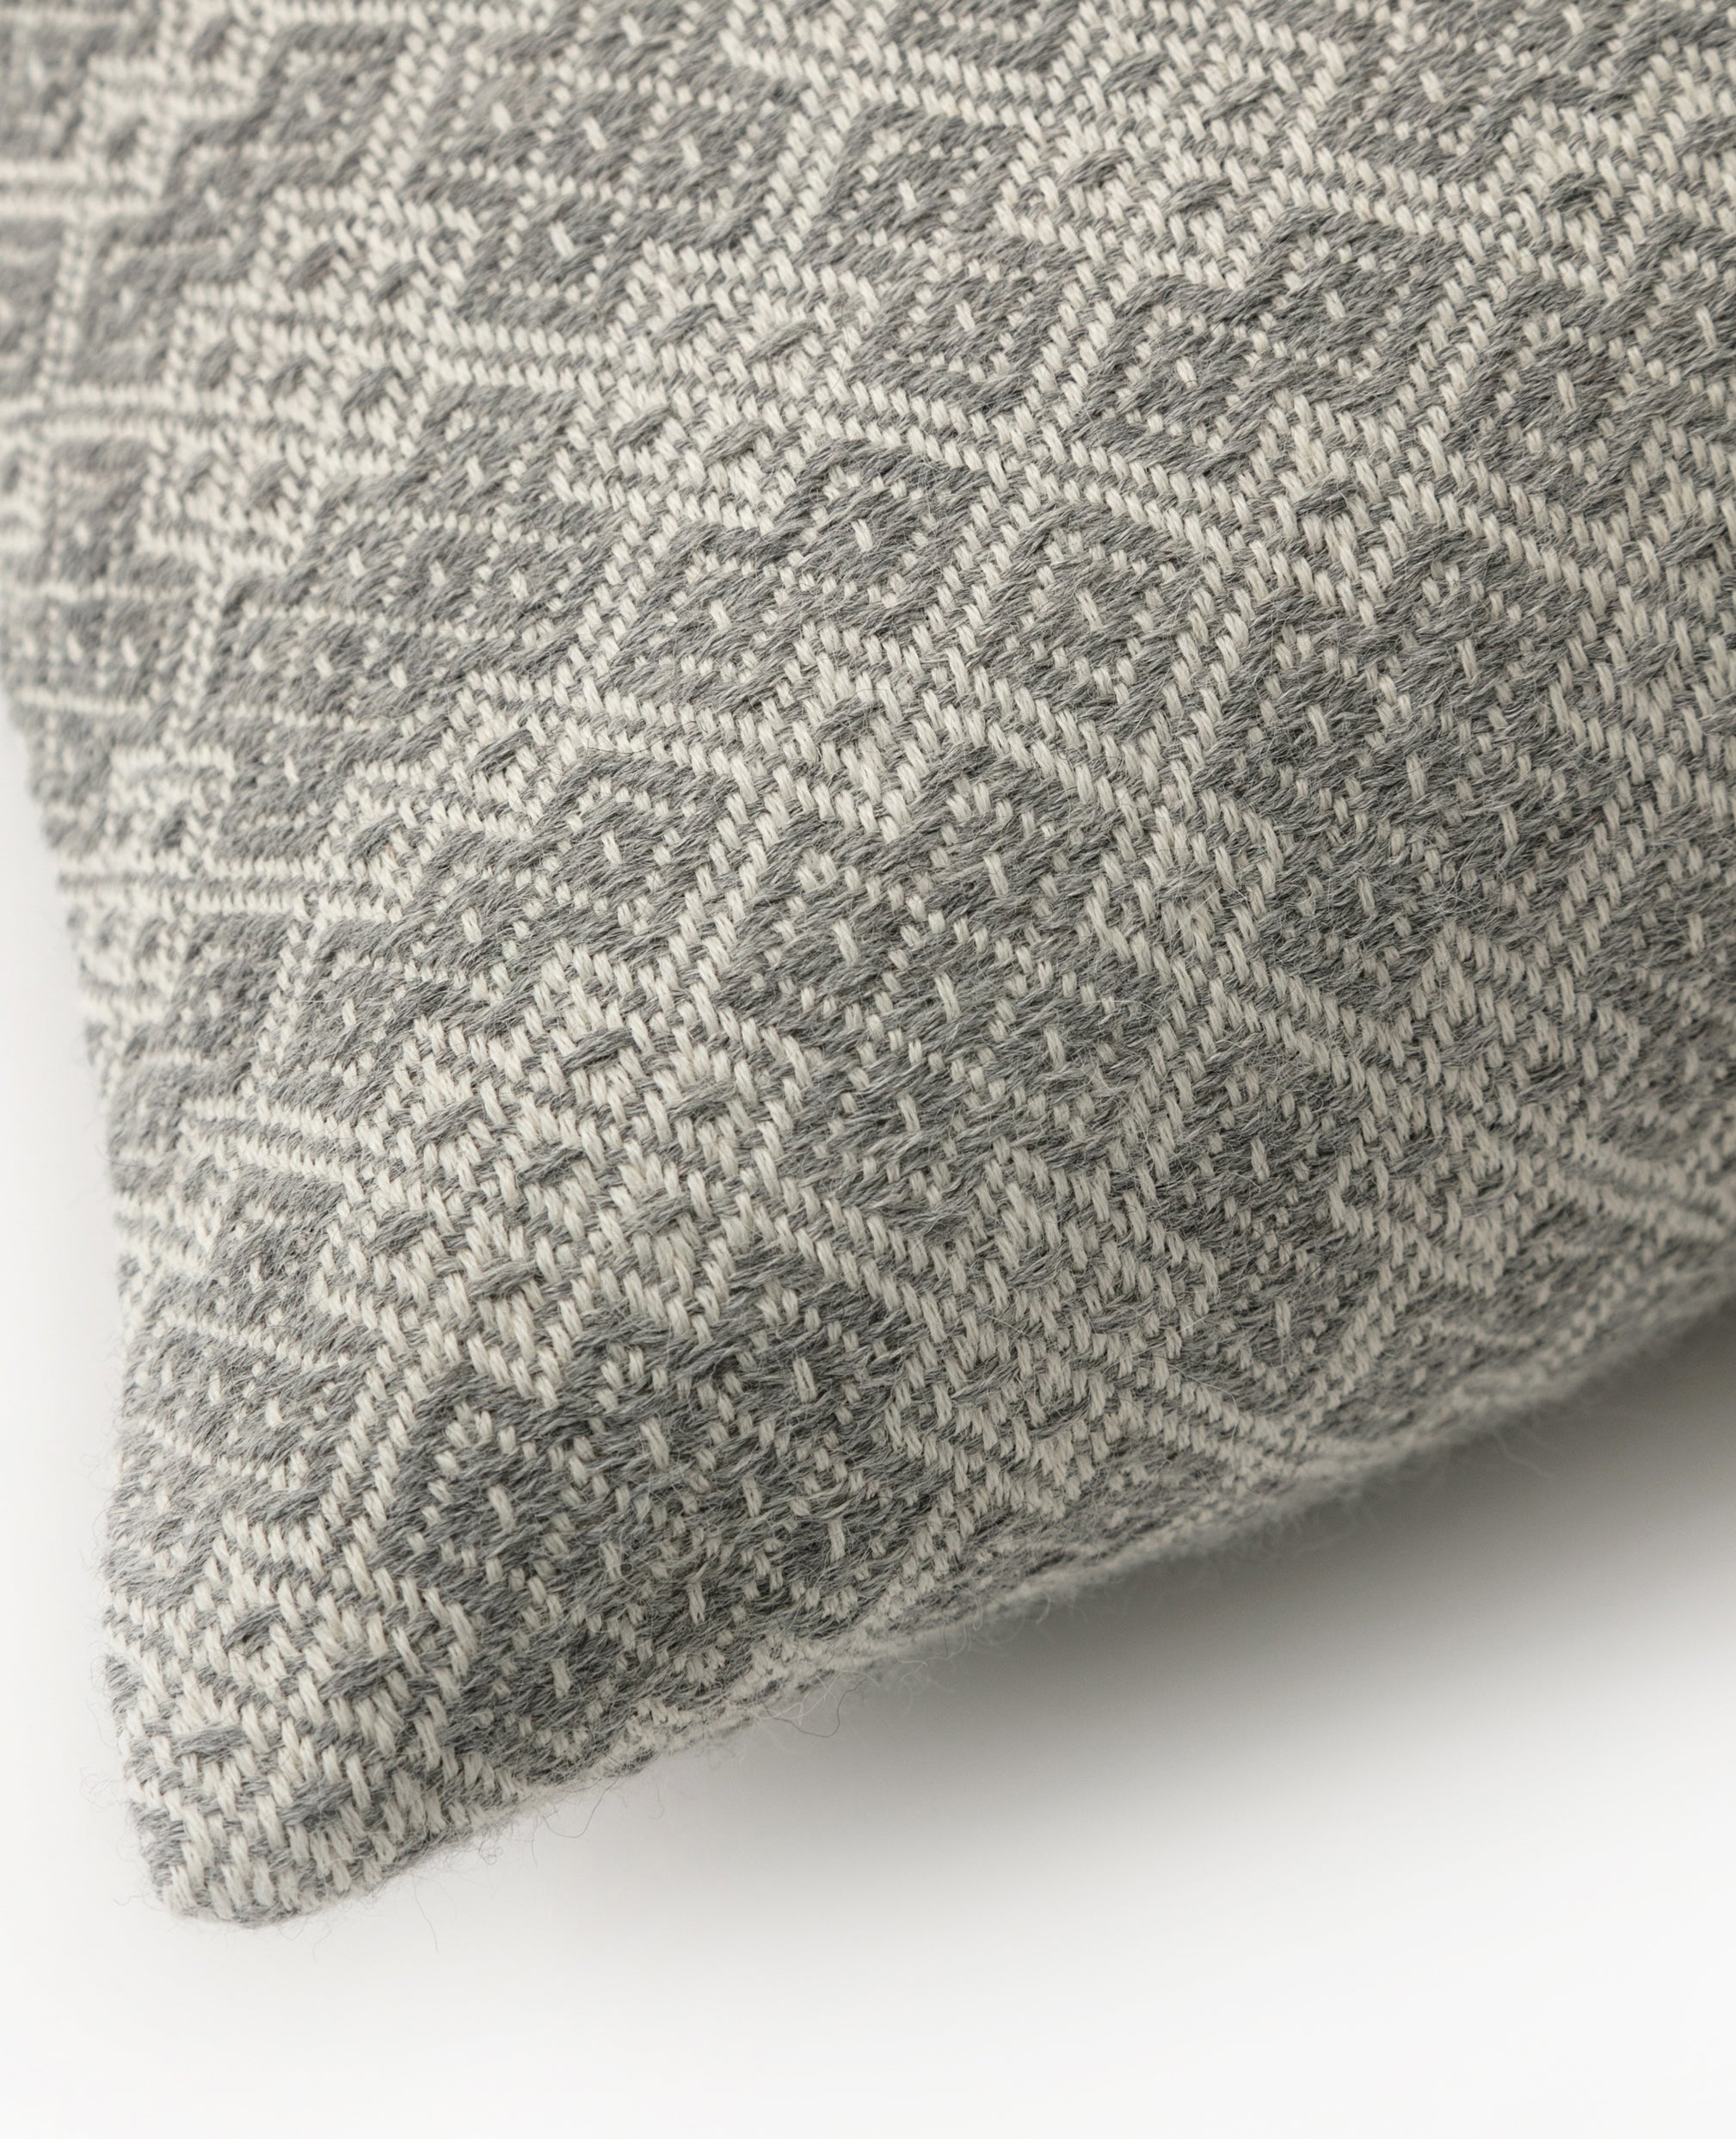 Aro overshot cushion detail